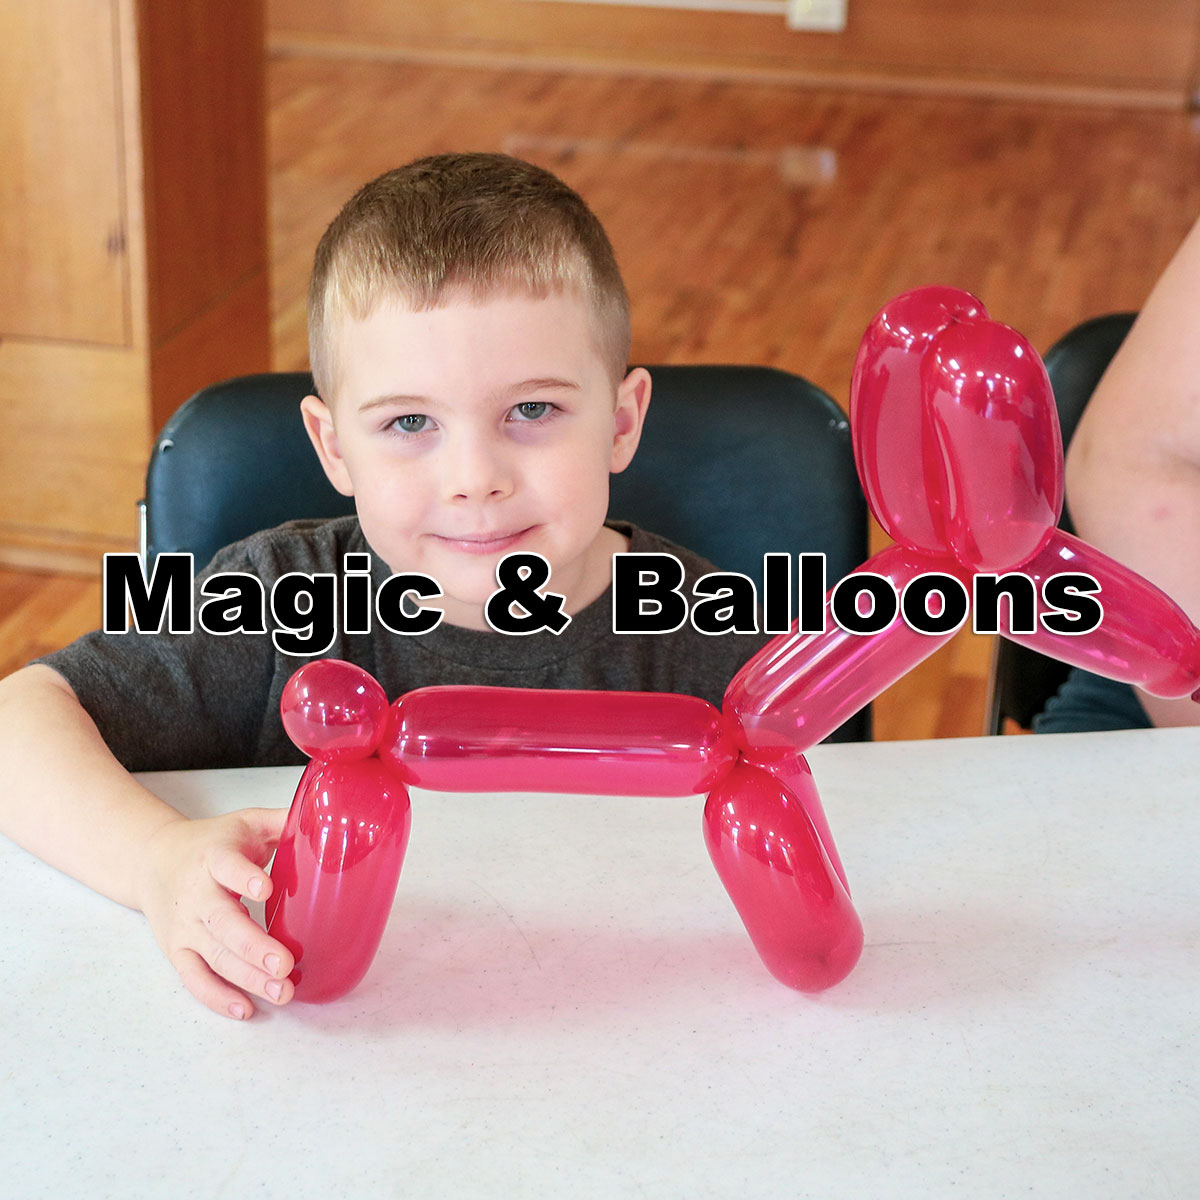 Magic & Balloons